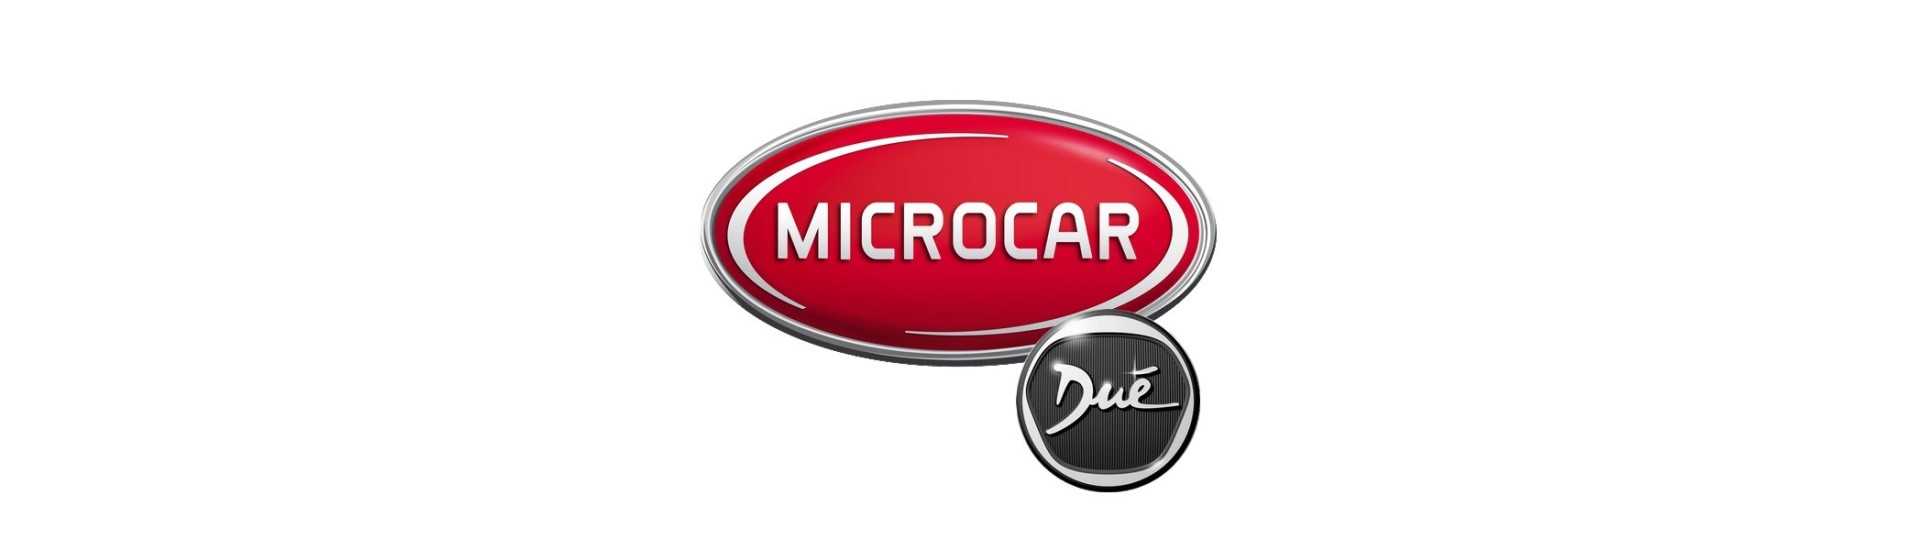 Türwinkel zum besten Preis für Auto ohne Lizenz Microcar Dué